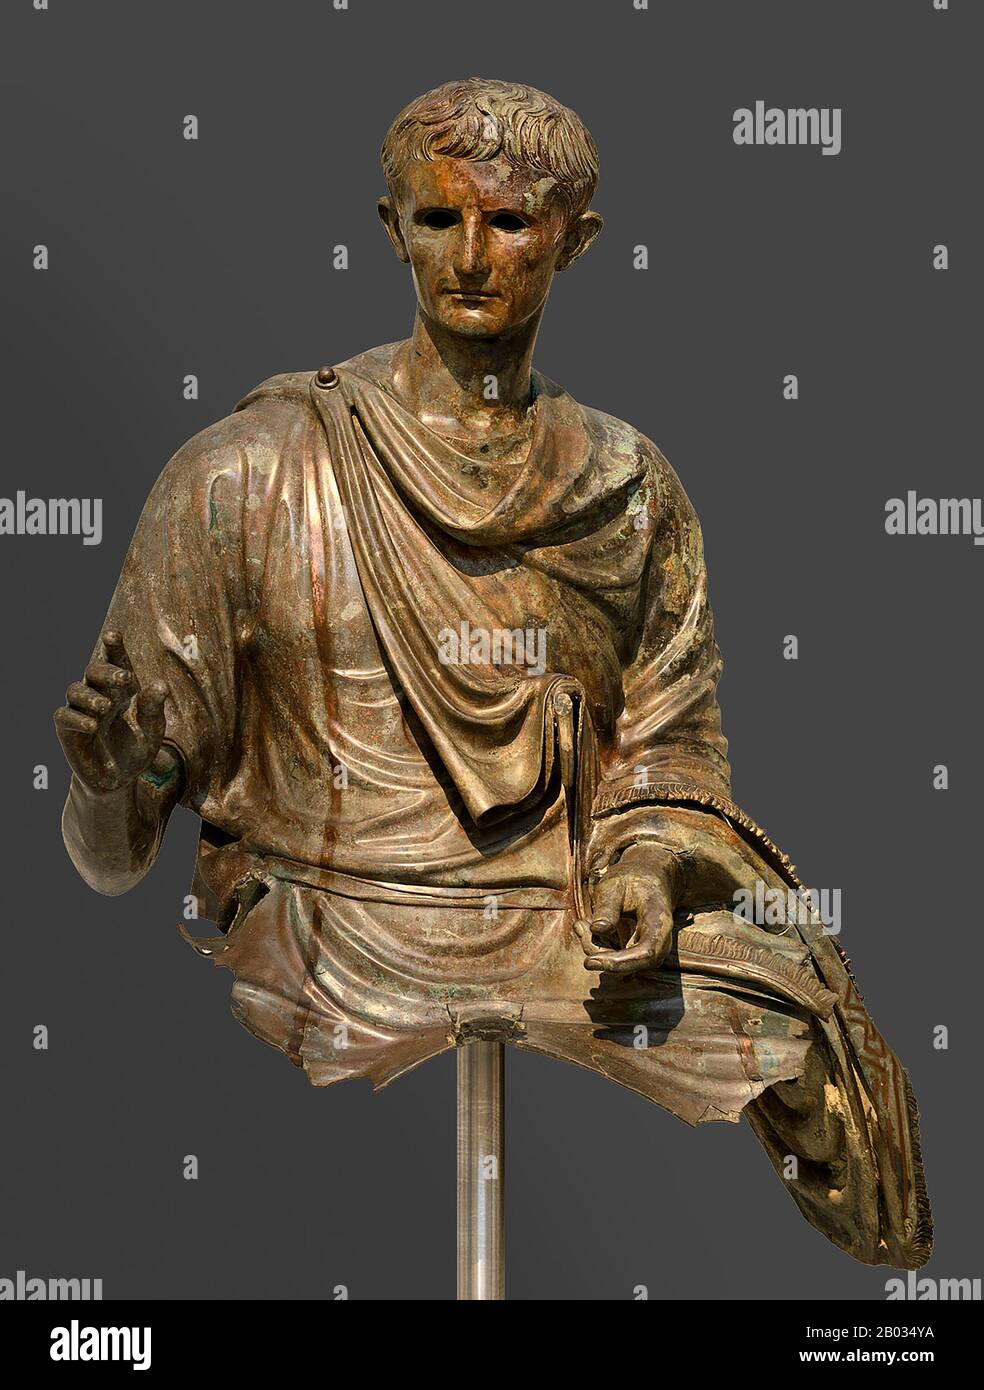 Als erster und einer der bedeutendsten römischen Kaiser gilt der ebenfalls als Octavian bekannte Caesar Augustus (63 v. Chr. - 14 u. z.). Augustus' sichtbarste Wirkung auf die Alltagskultur ist der achte Monat des Jahres, der in "Augustus' Honor" in 8 v. Chr. umbenannt wurde, weil mehrere der bedeutendsten Ereignisse in seinem Machtaufstieg, der im Herbst Alexandrias gipfelte, in diesem Monat stattfanden. Stockfoto